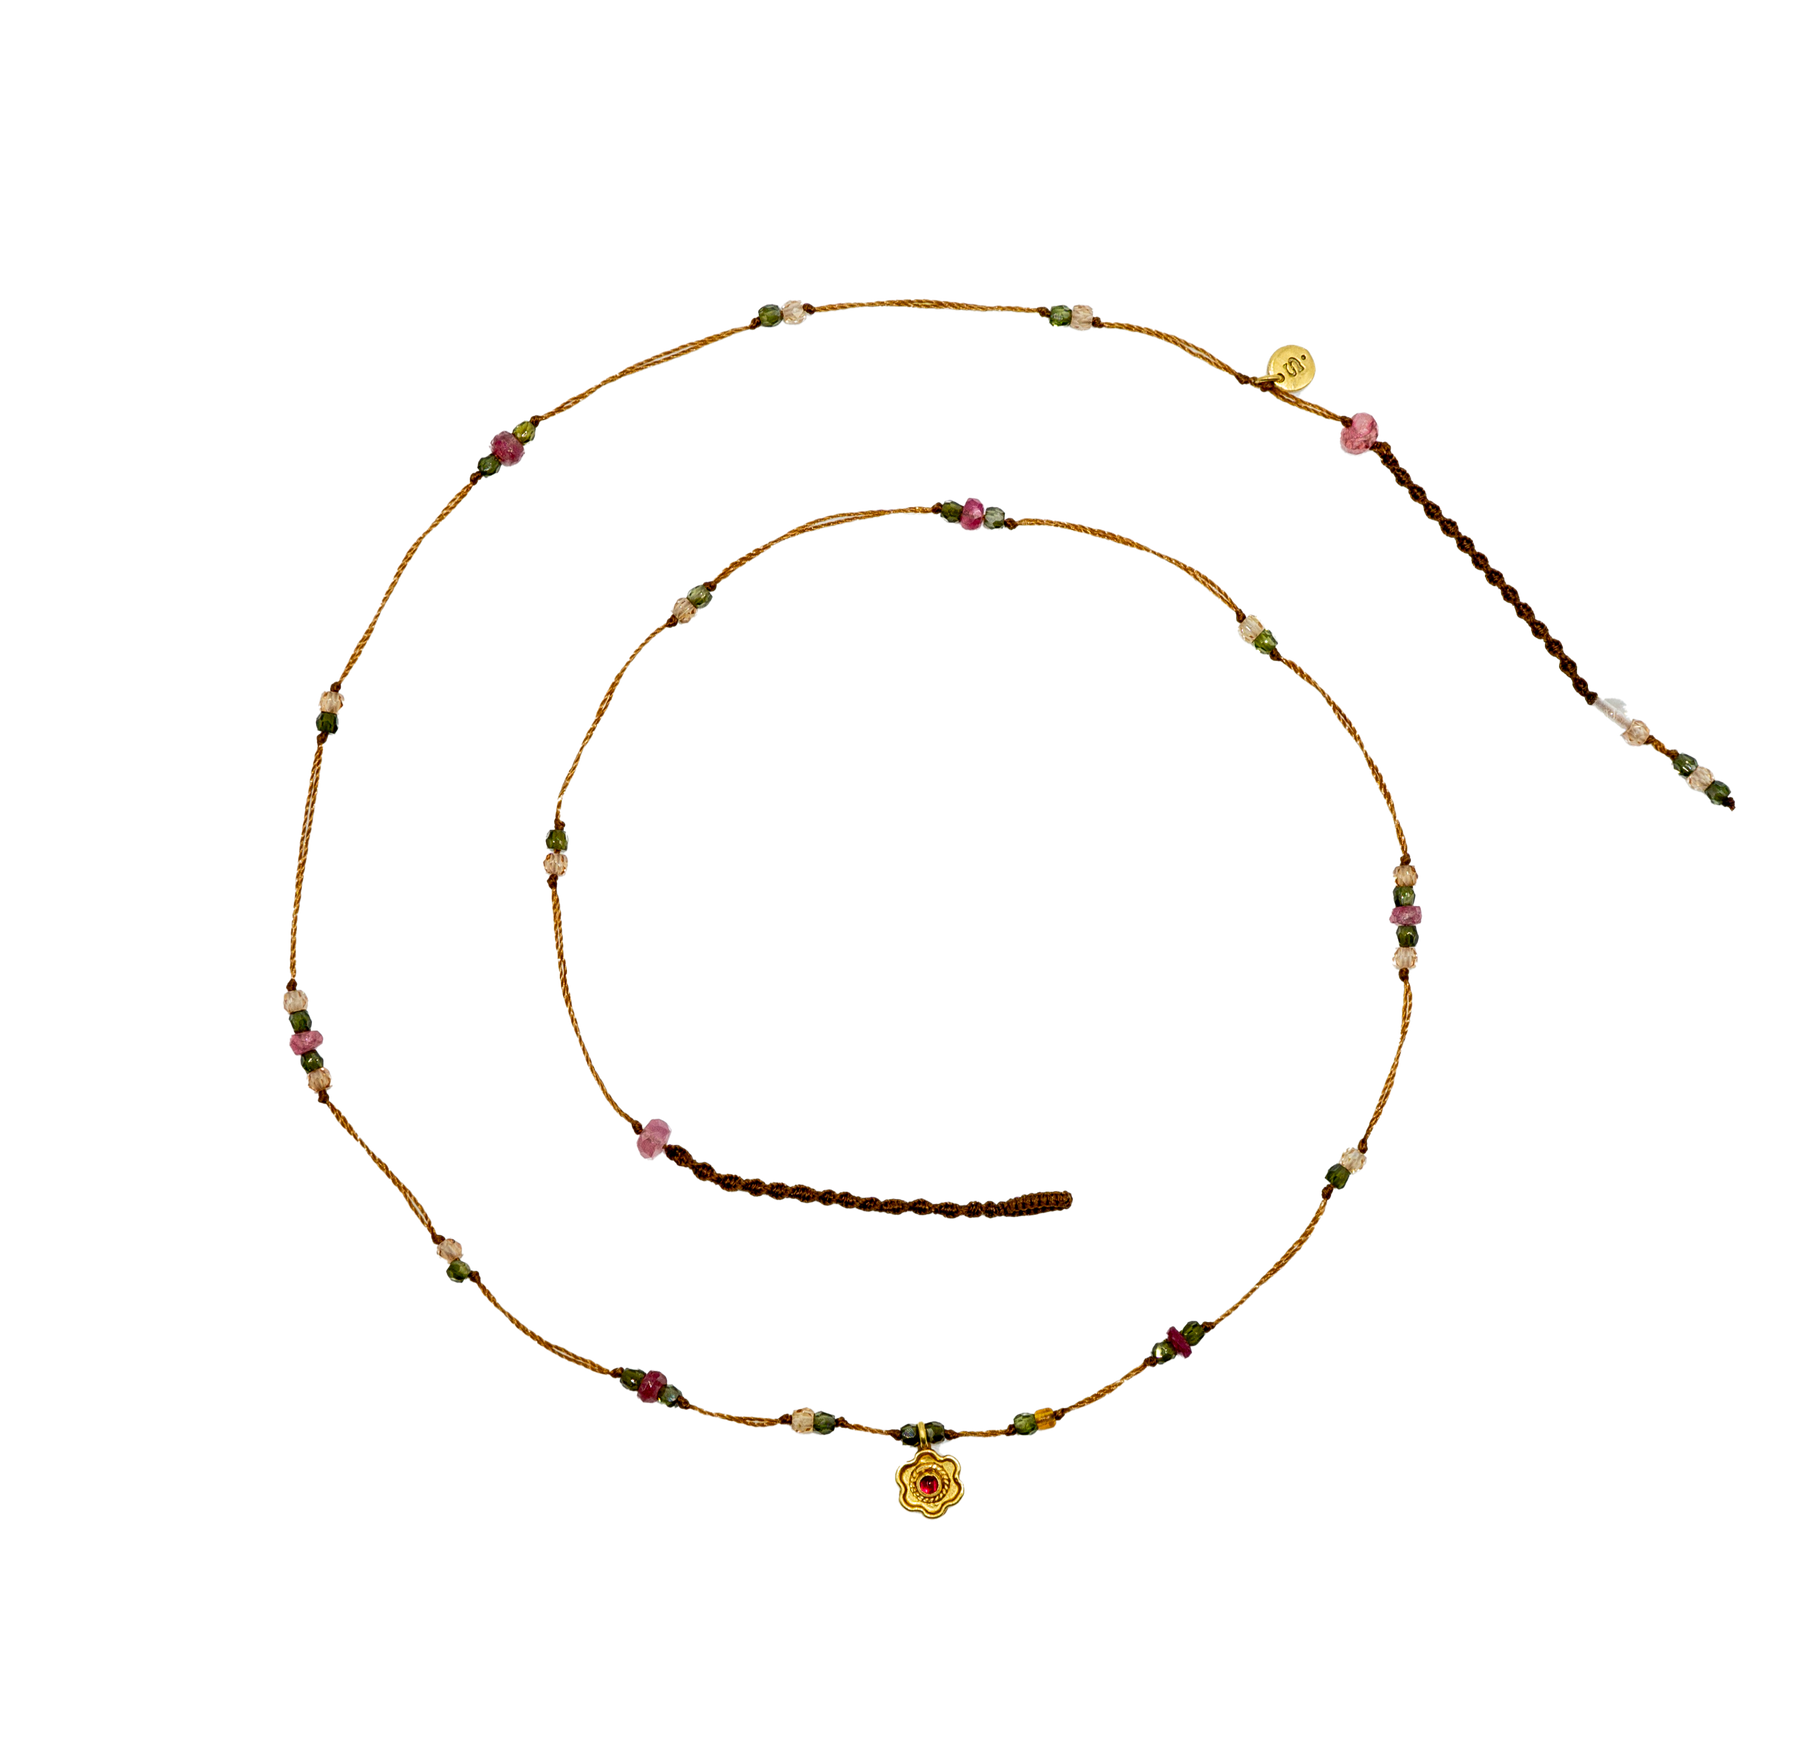 Goldie Flower Necklace - Ruby - Mix Pink Tourmaline - Tobacco Thread